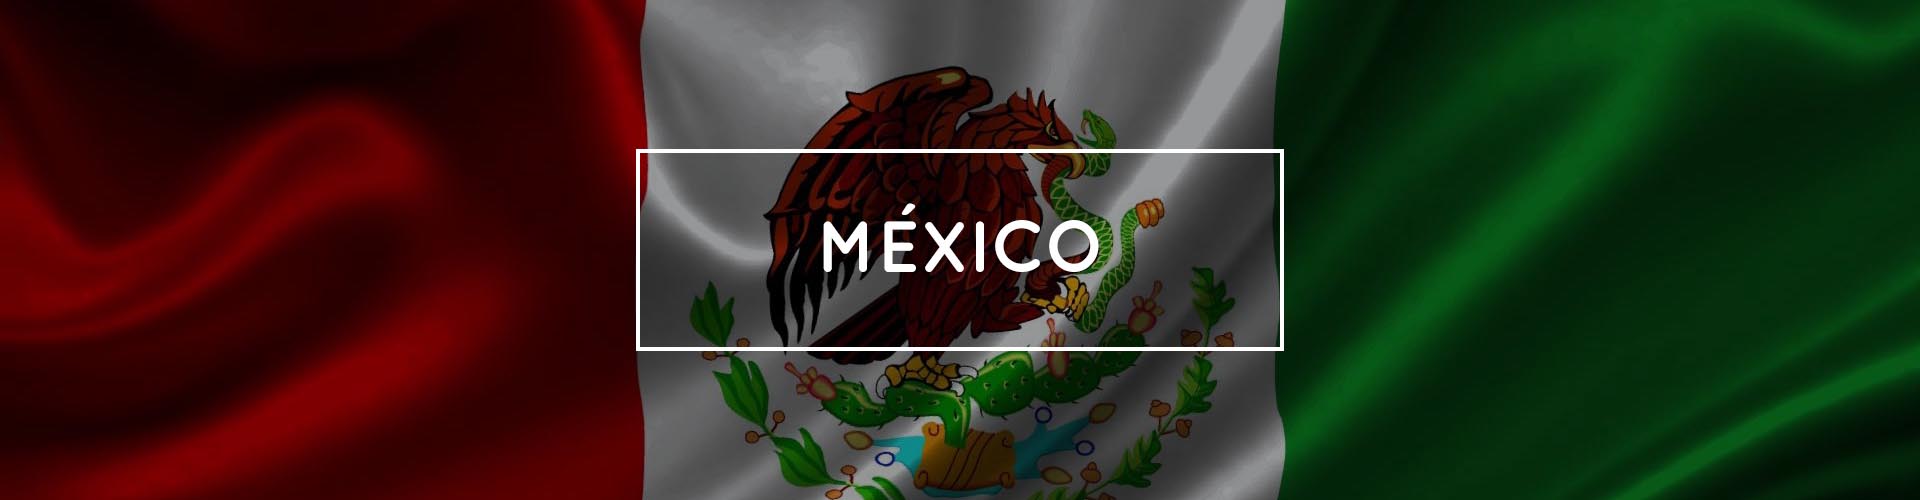 1920x500 Banner México